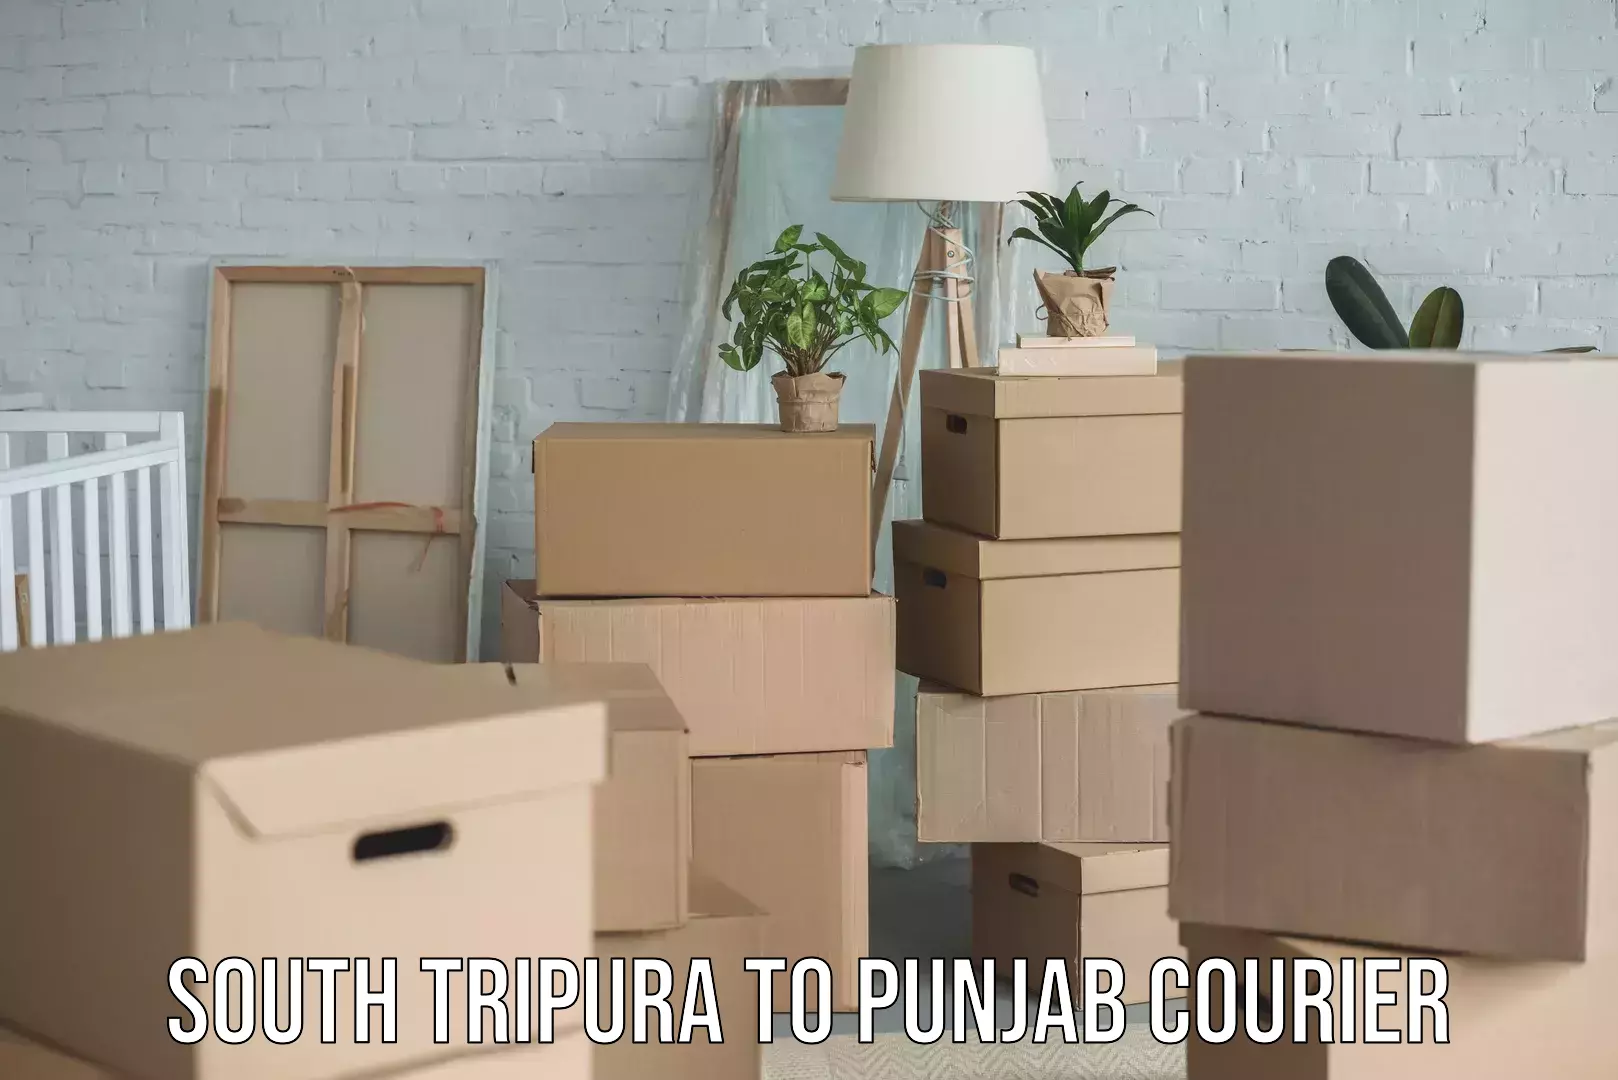 Express package handling South Tripura to Punjab